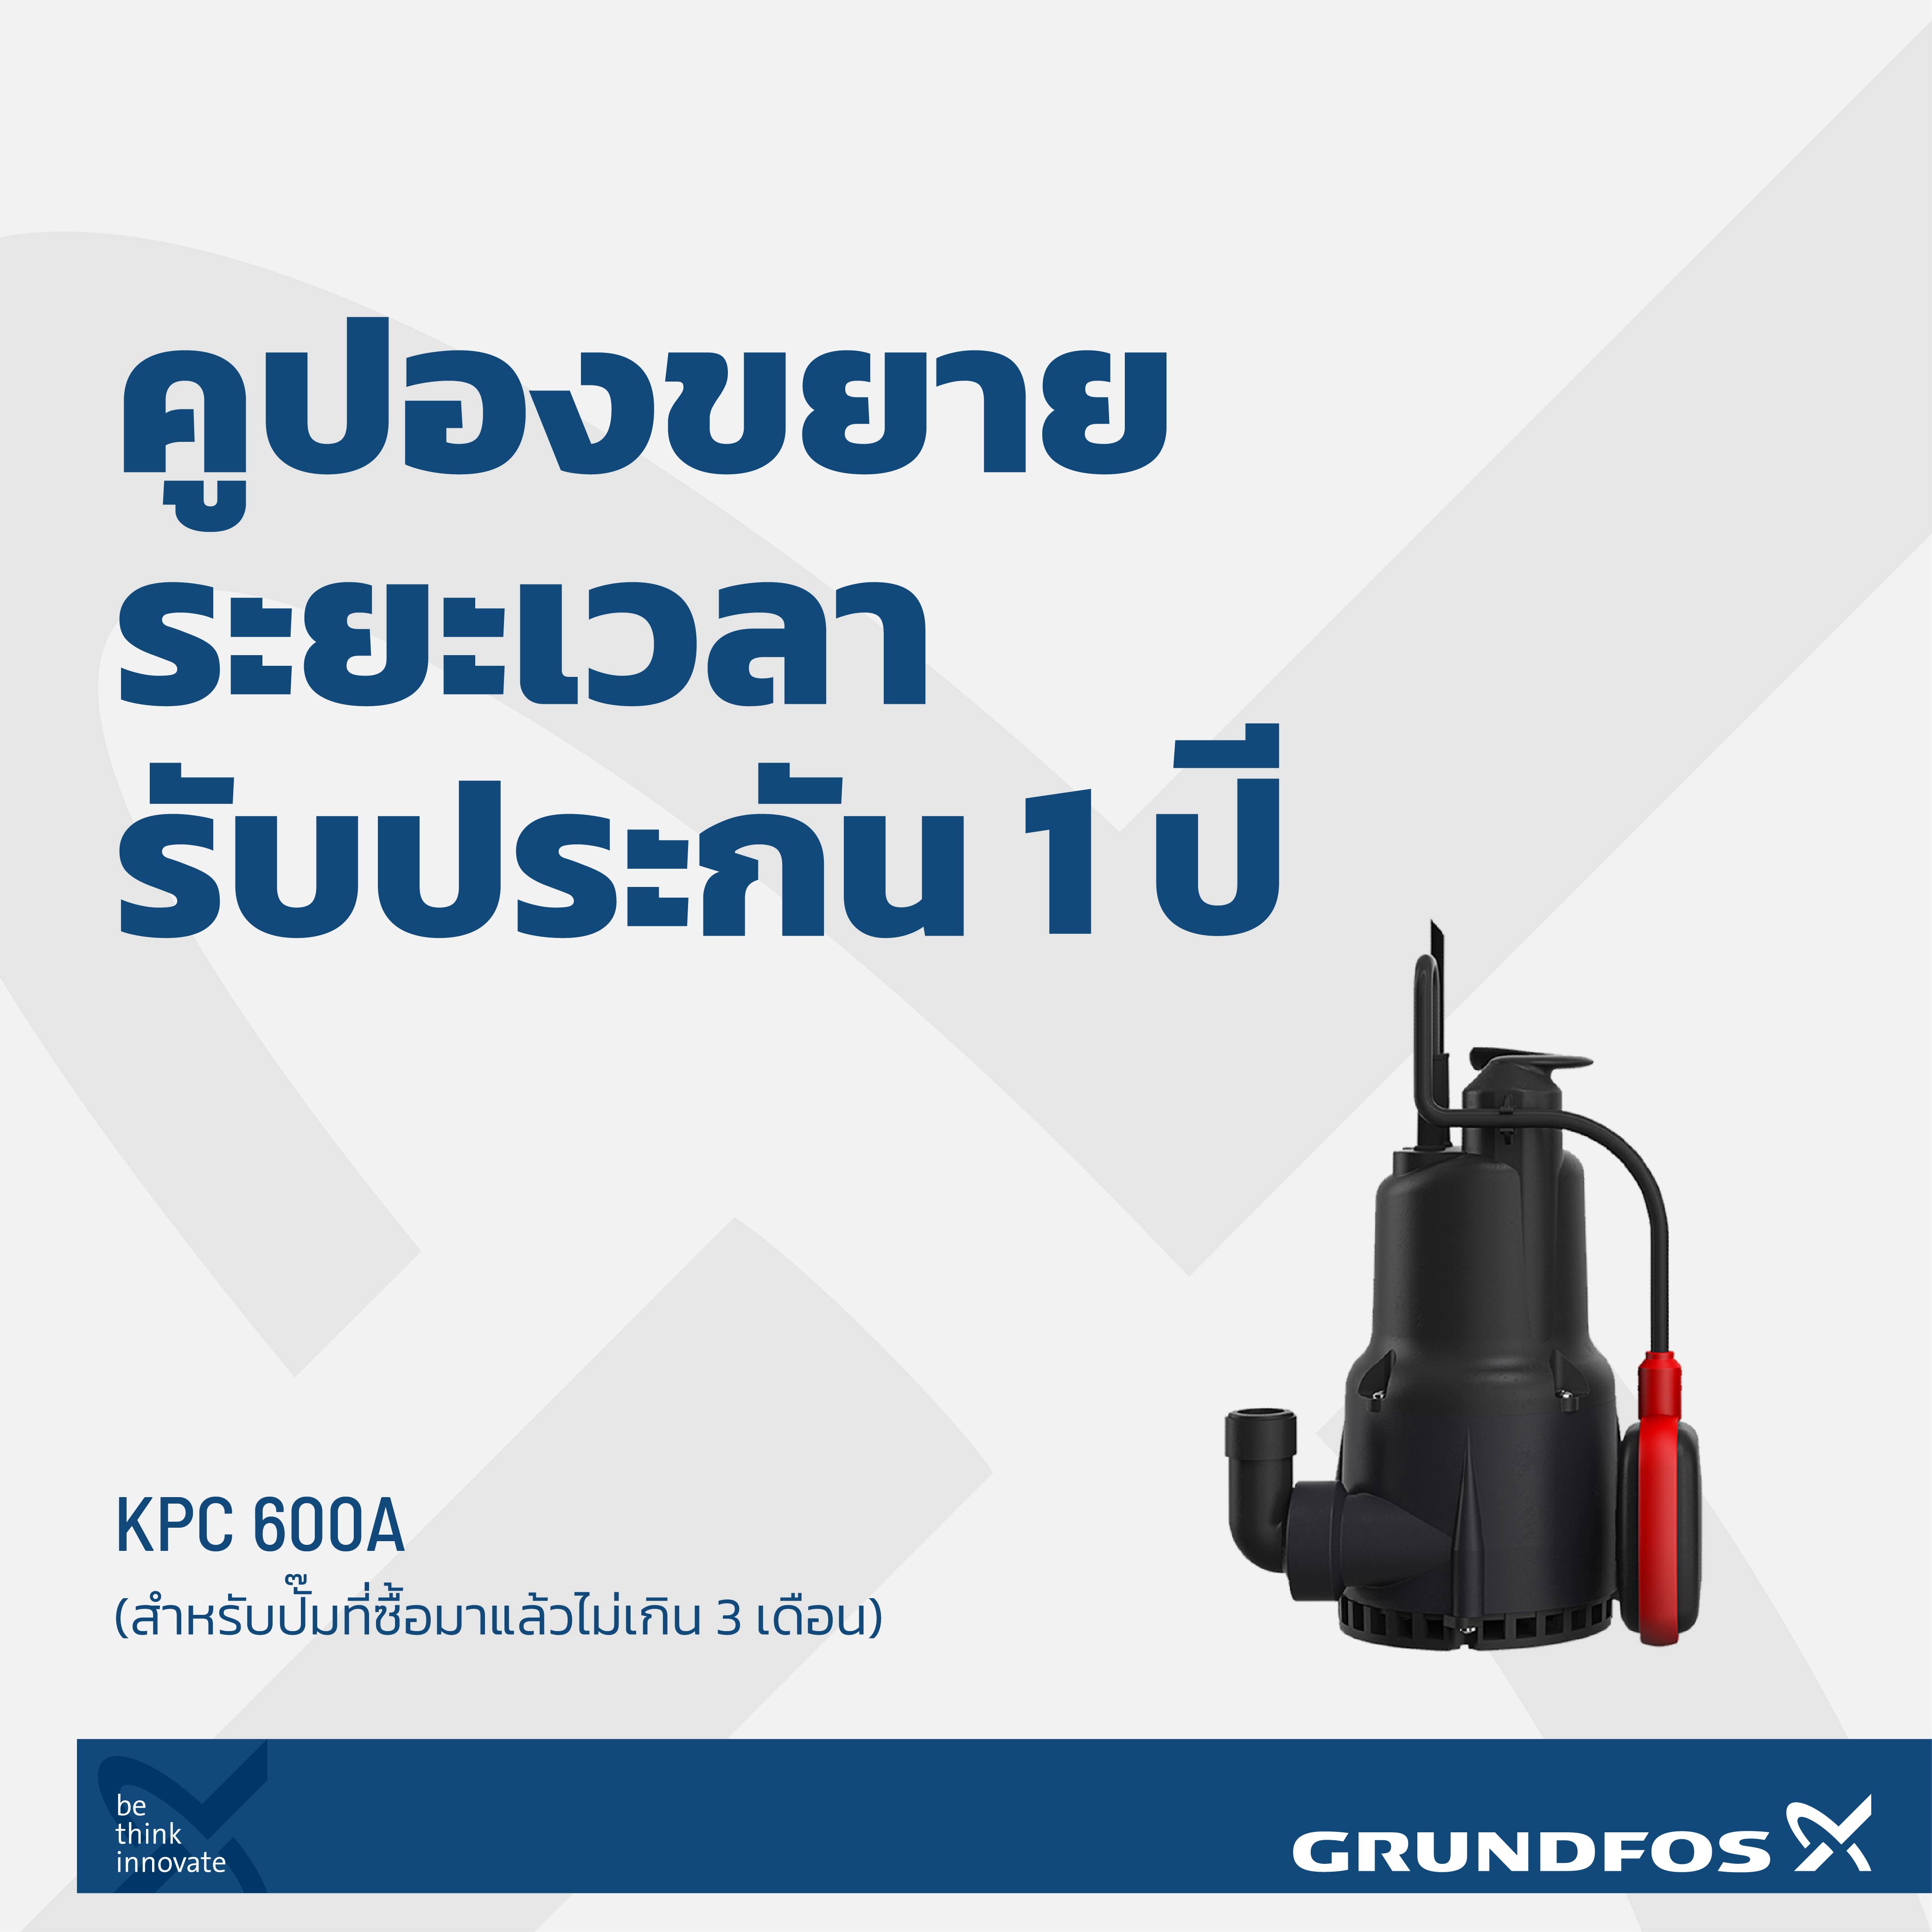 คูปองขยายเวลารับประกันสินค้าเพิ่ม 1 ปี ปั๊มน้ำรุ่น KPC 600A (สำหรับปั๊มที่ซื้อมาแล้วไม่เกิน 3 เดือน)